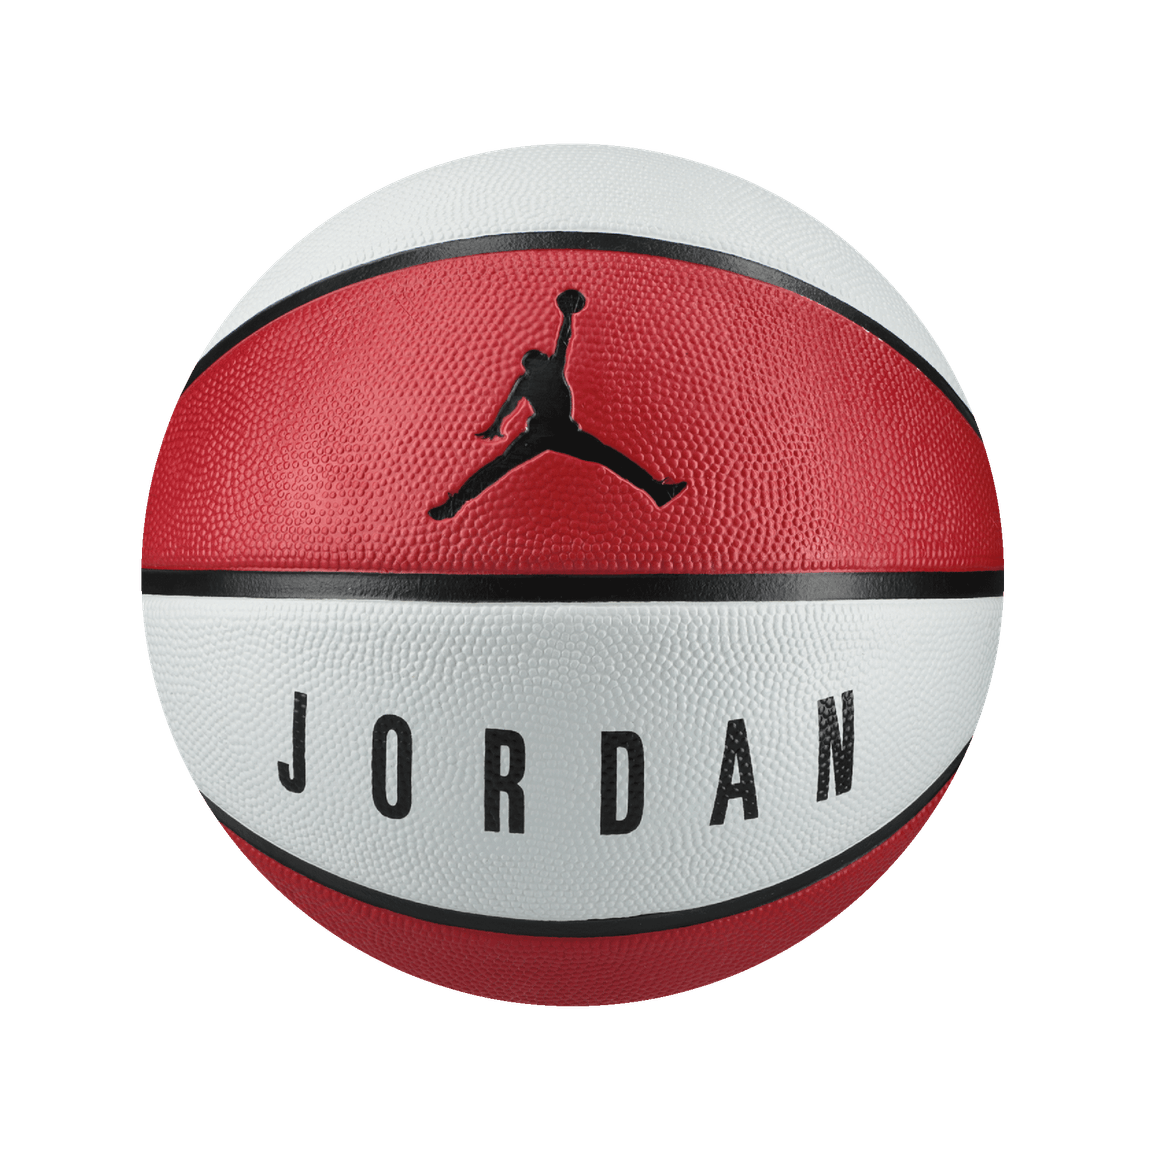 pelota de basquet jordan